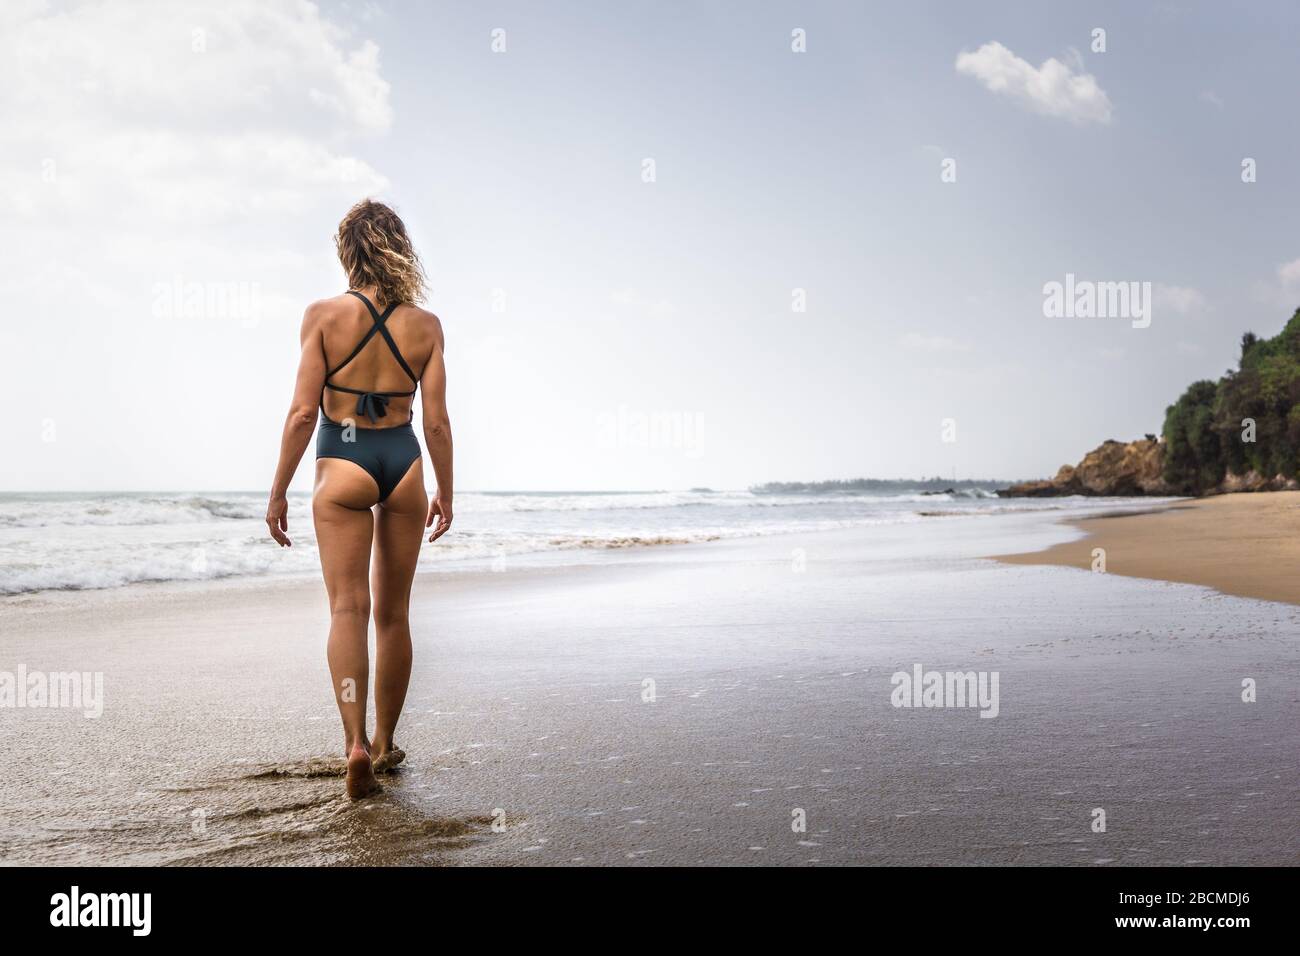 Rubia surfista chica con un traje de baño azul caminando en la playa en una poderosa pose mirando romper las olas, sur de Sri lanka Foto de stock